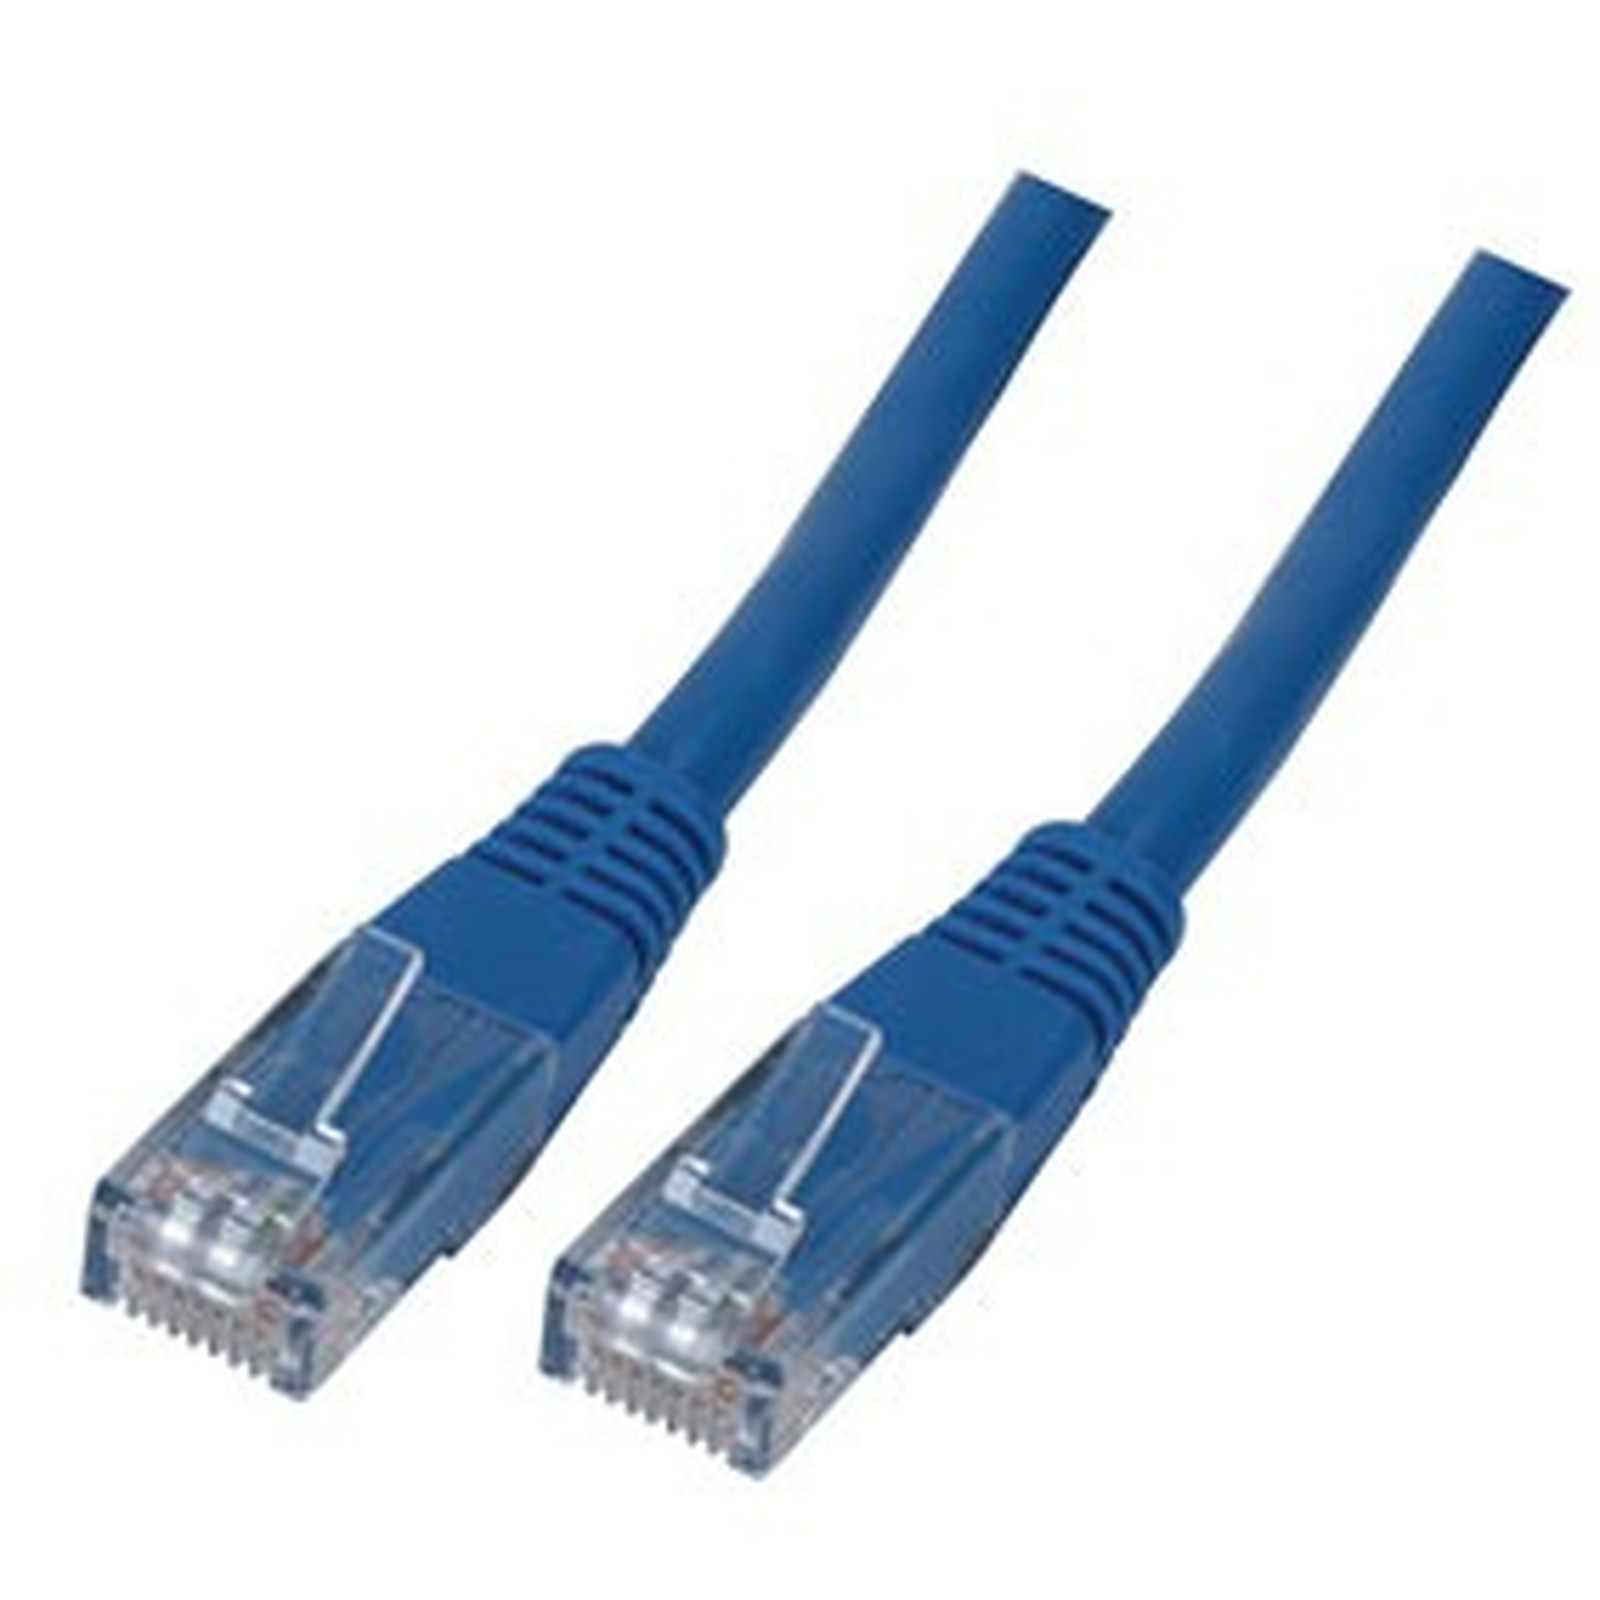 Cable RJ45 categorie 6 U/UTP 5 m (Bleu) - Cable RJ45 Generique